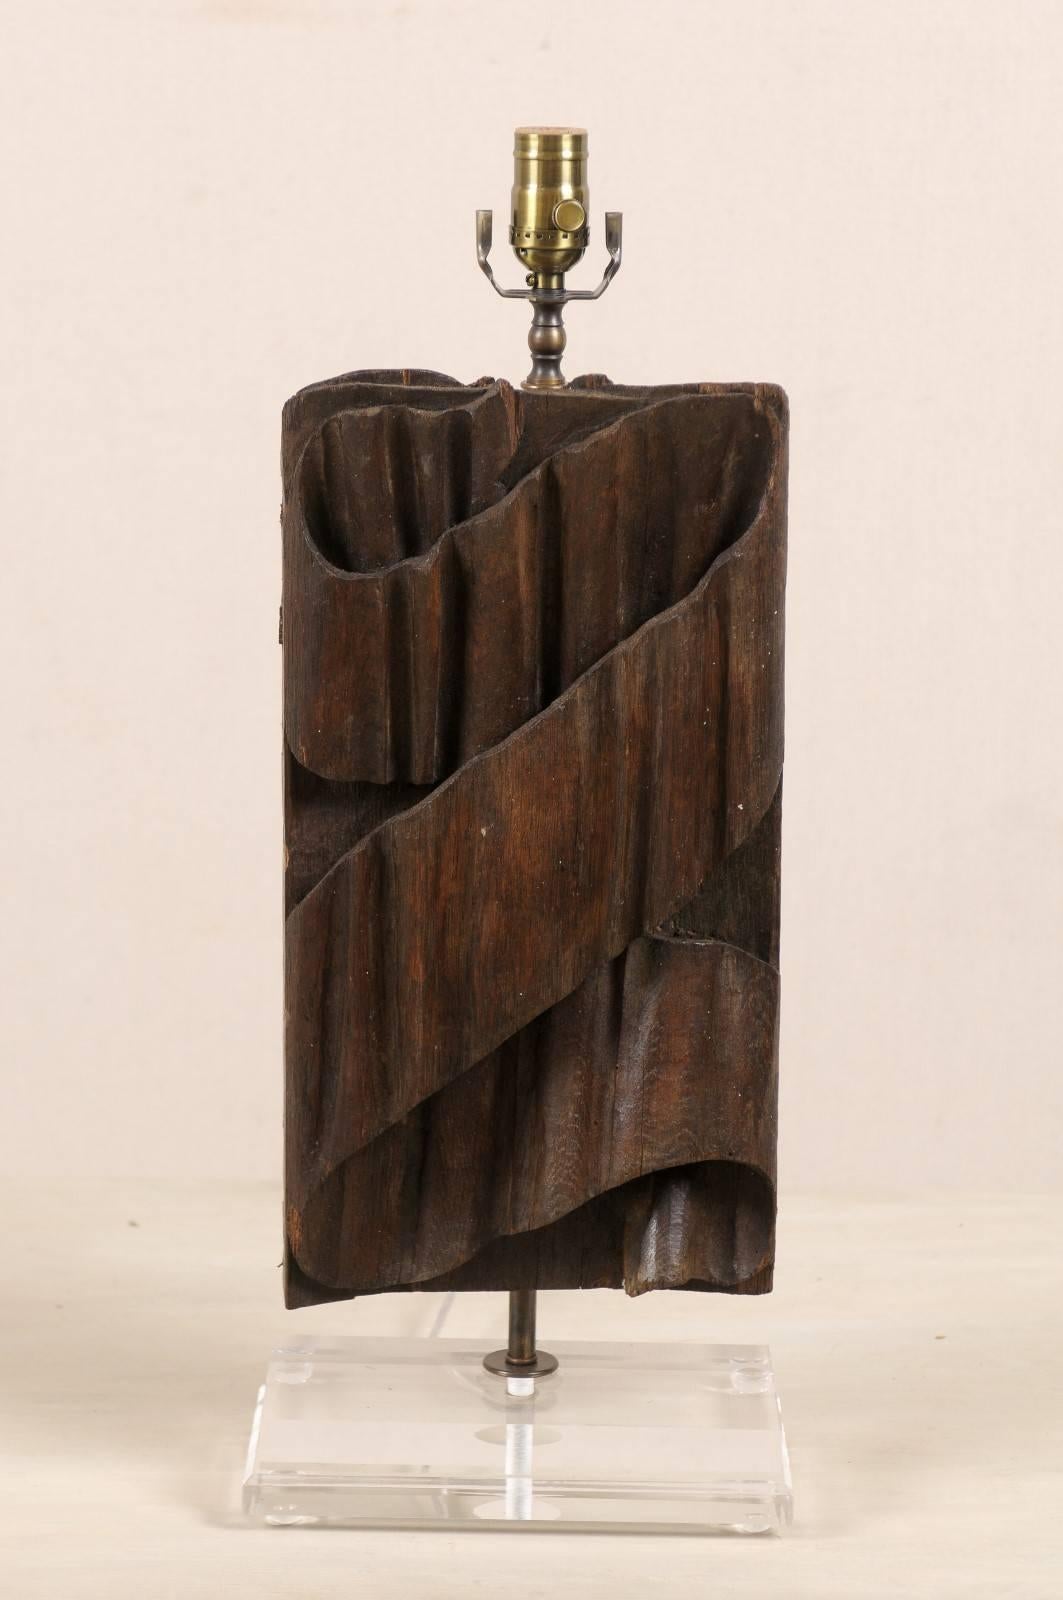 Un seul fragment italien du XIXe siècle transformé en lampe de table sur une nouvelle base en Lucite personnalisée. Ce fragment italien présente un motif plissé en forme de ruban sculpté le long de son corps. Cette lampe de table est d'une couleur